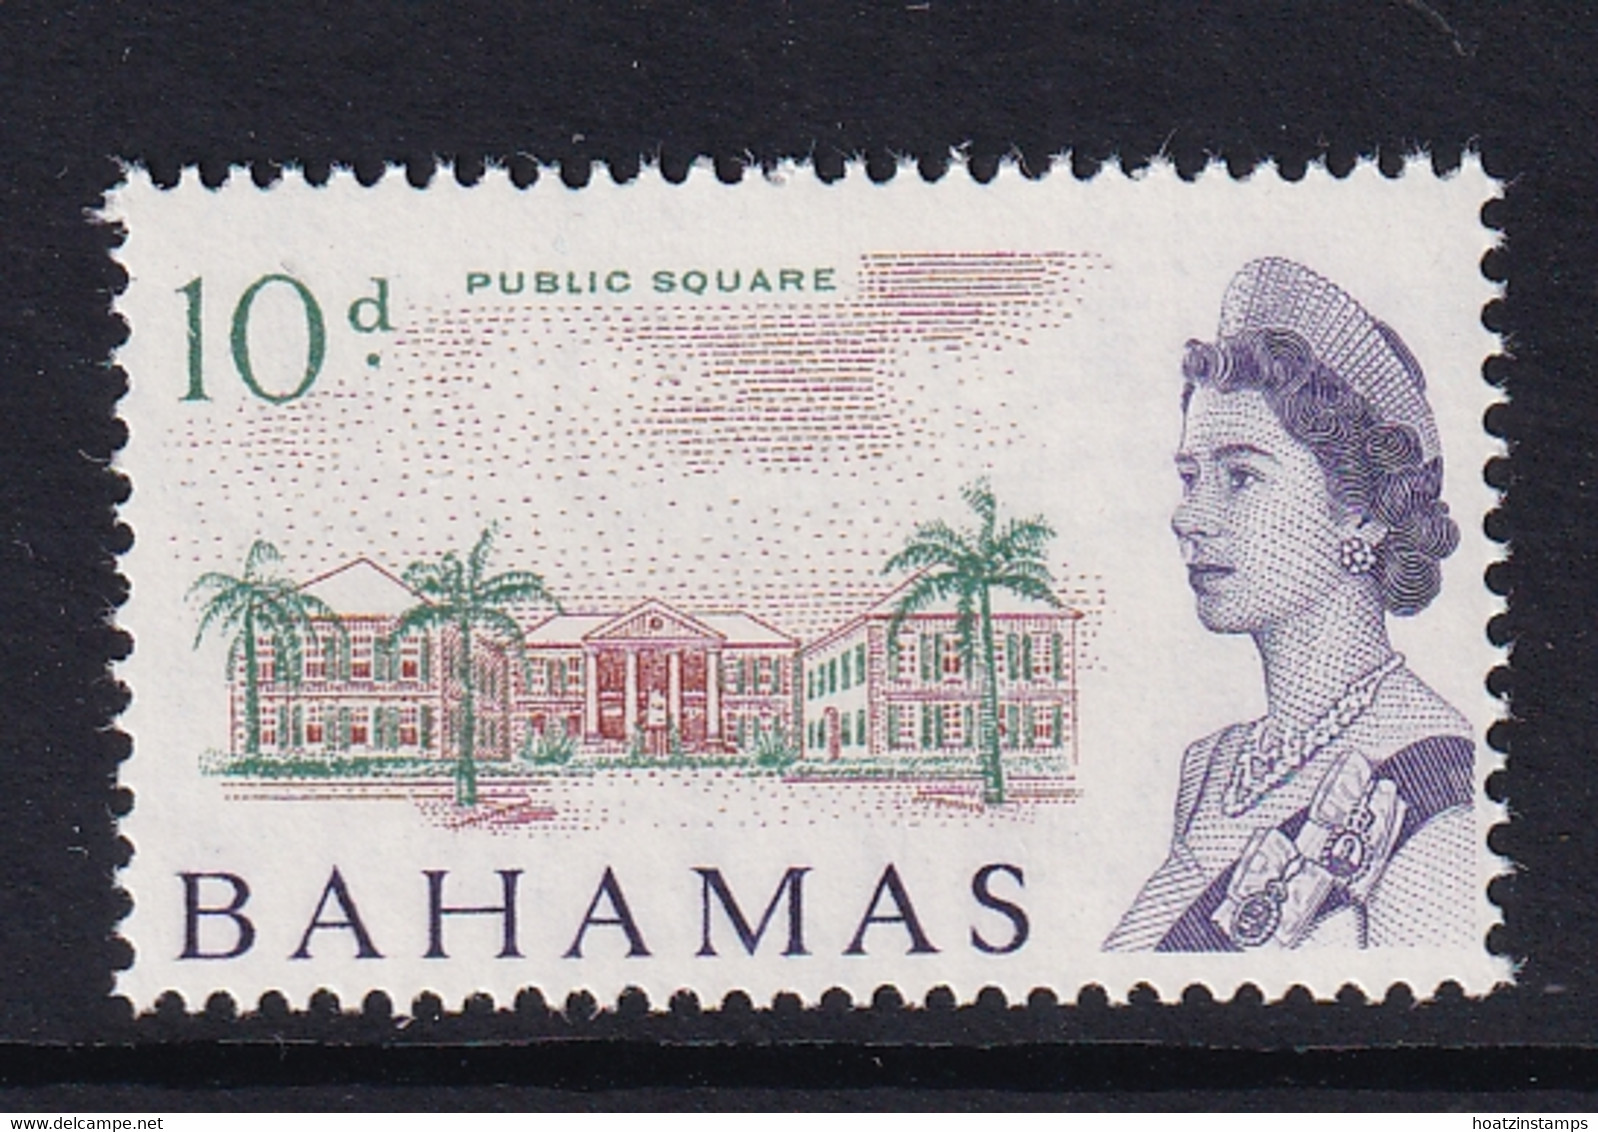 Bahamas: 1965   QE II - Pictorial    SG255   10d    MNH - 1963-1973 Autonomie Interne